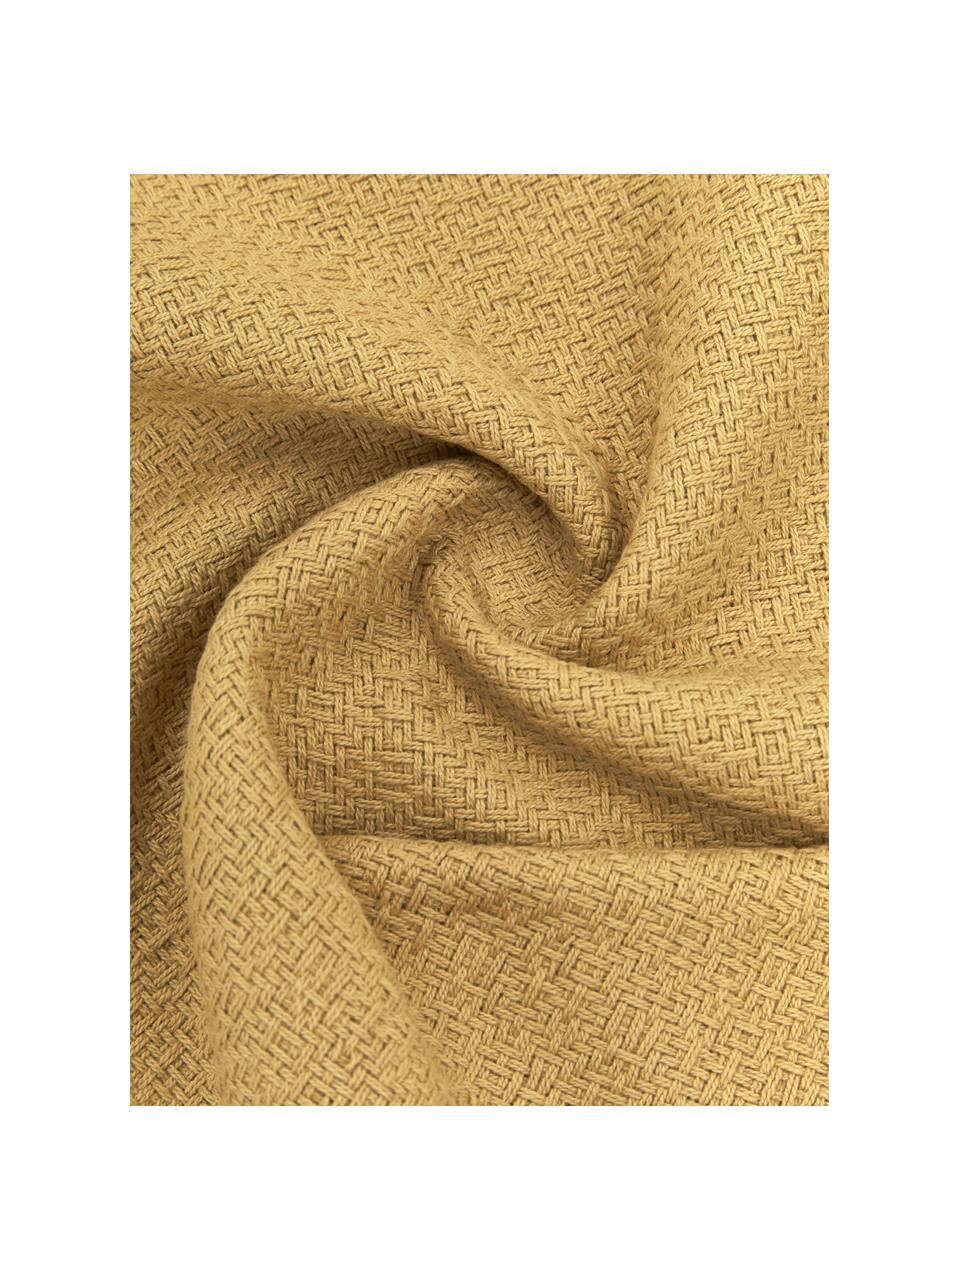 Funda de cojín con flecos Loran, 100% algodón, Amarillo mostaza, blanco crema, An 30 x L 50 cm